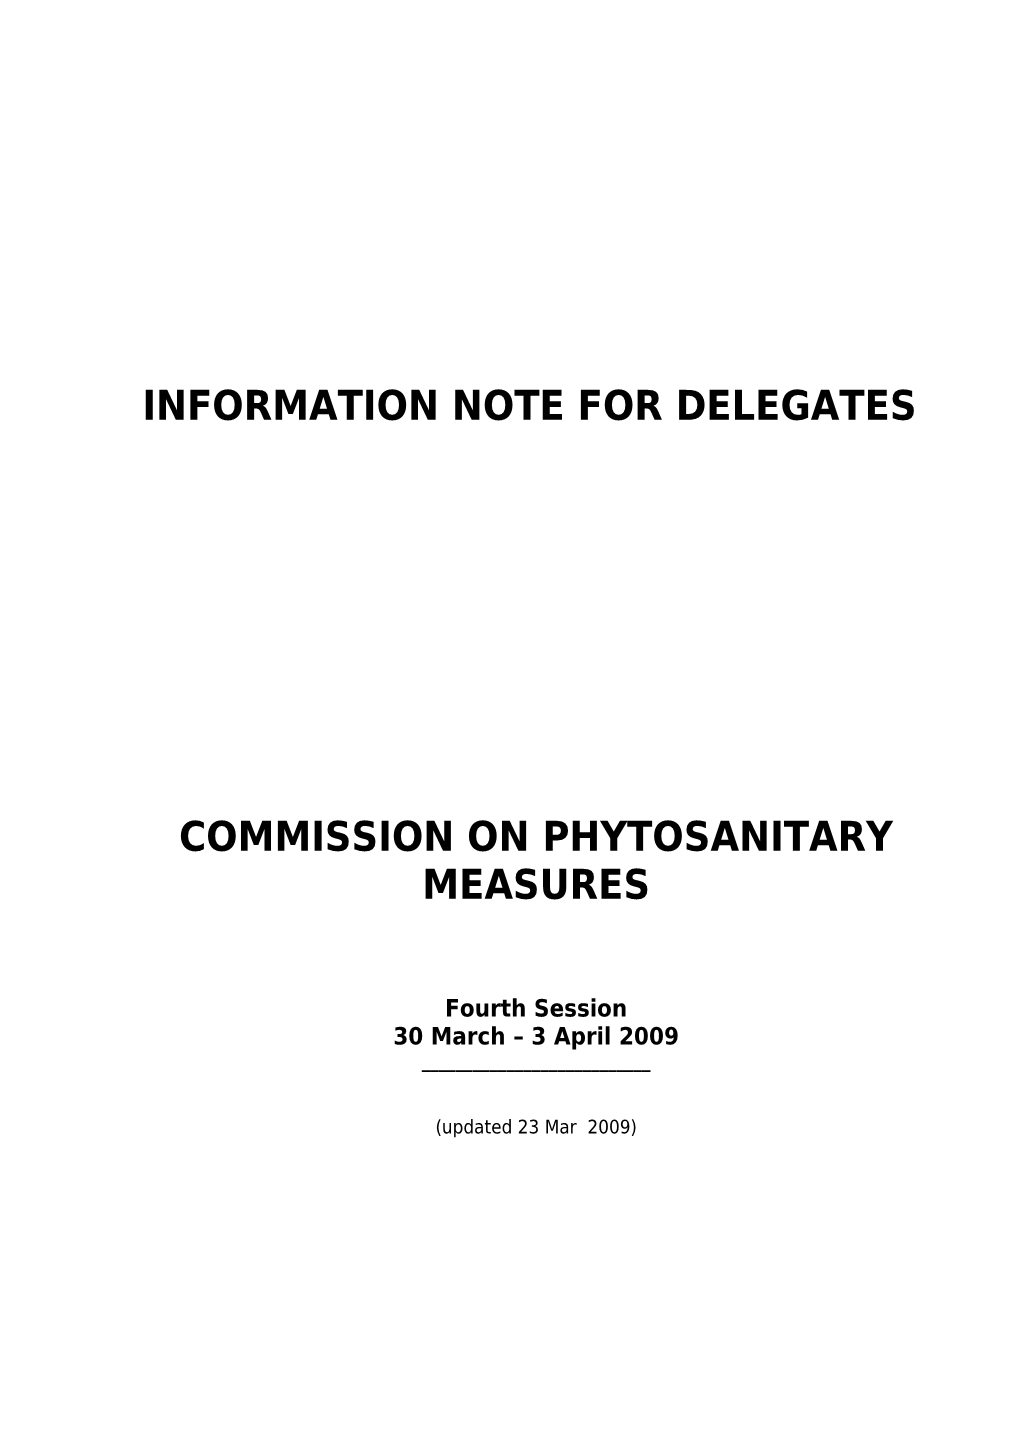 Information Note for Delegates